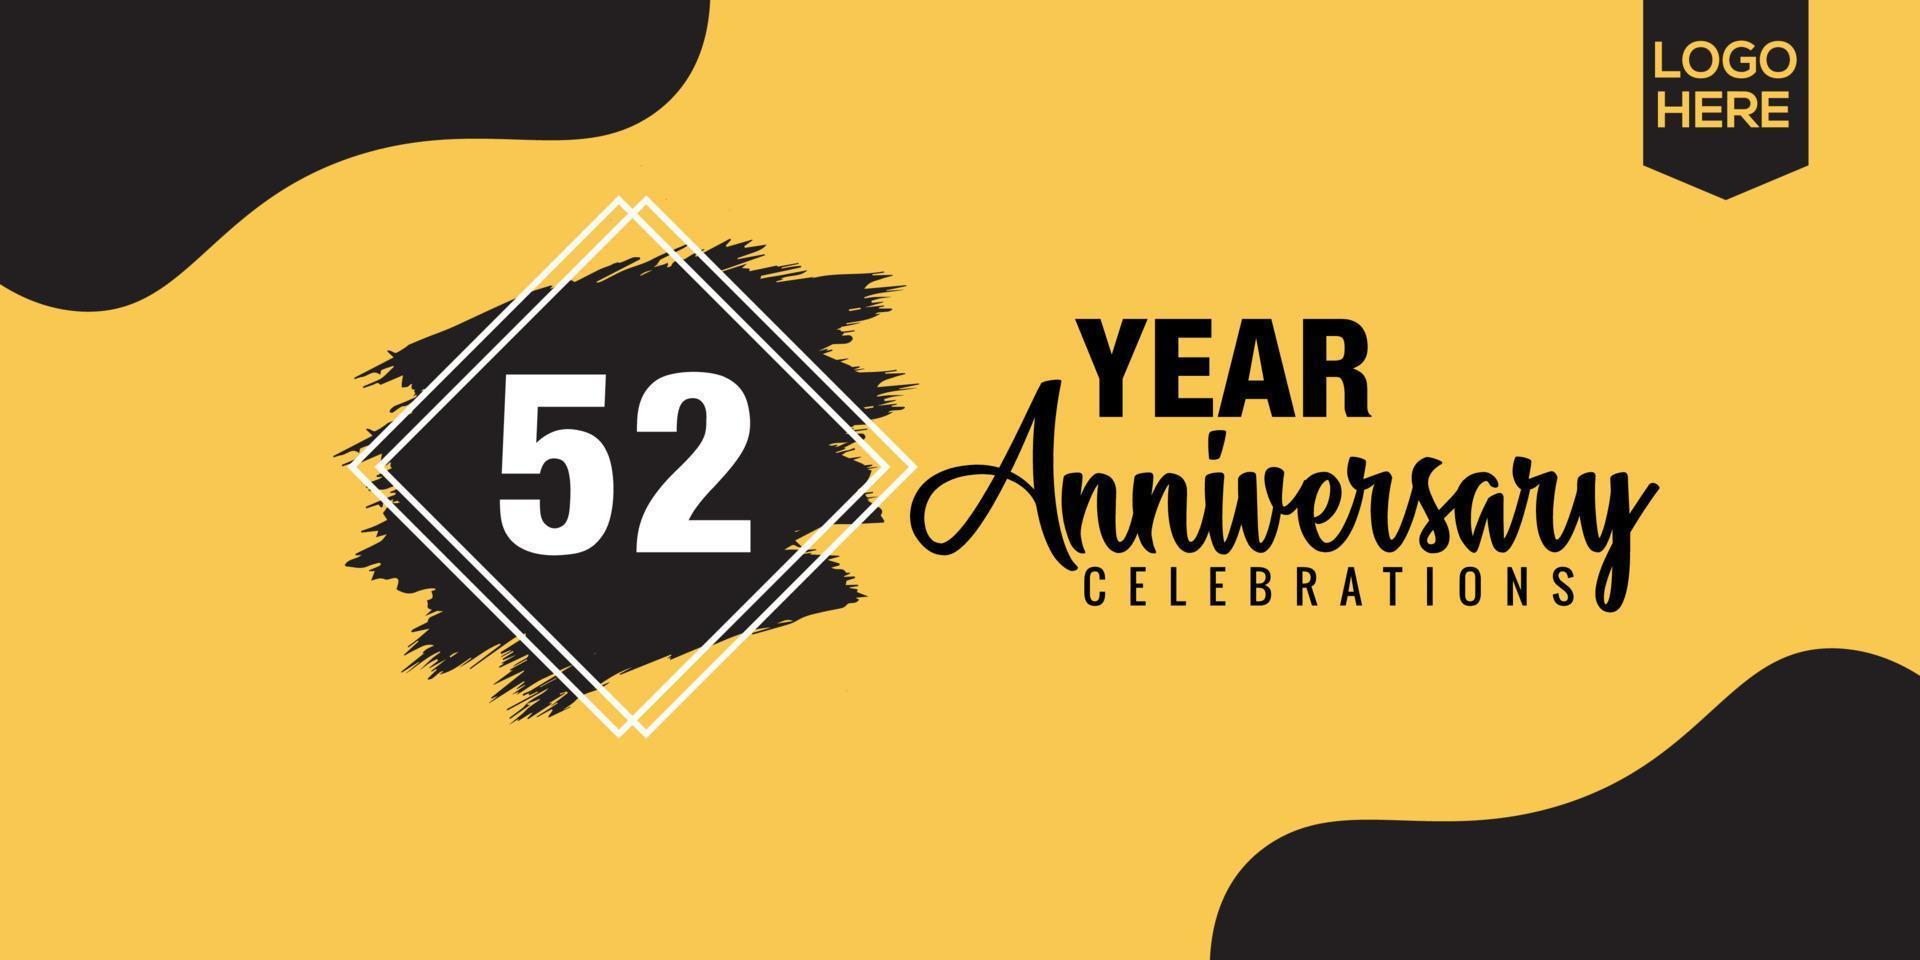 52nd anni anniversario celebrazione logo design con nero spazzola e giallo colore con nero astratto vettore illustrazione